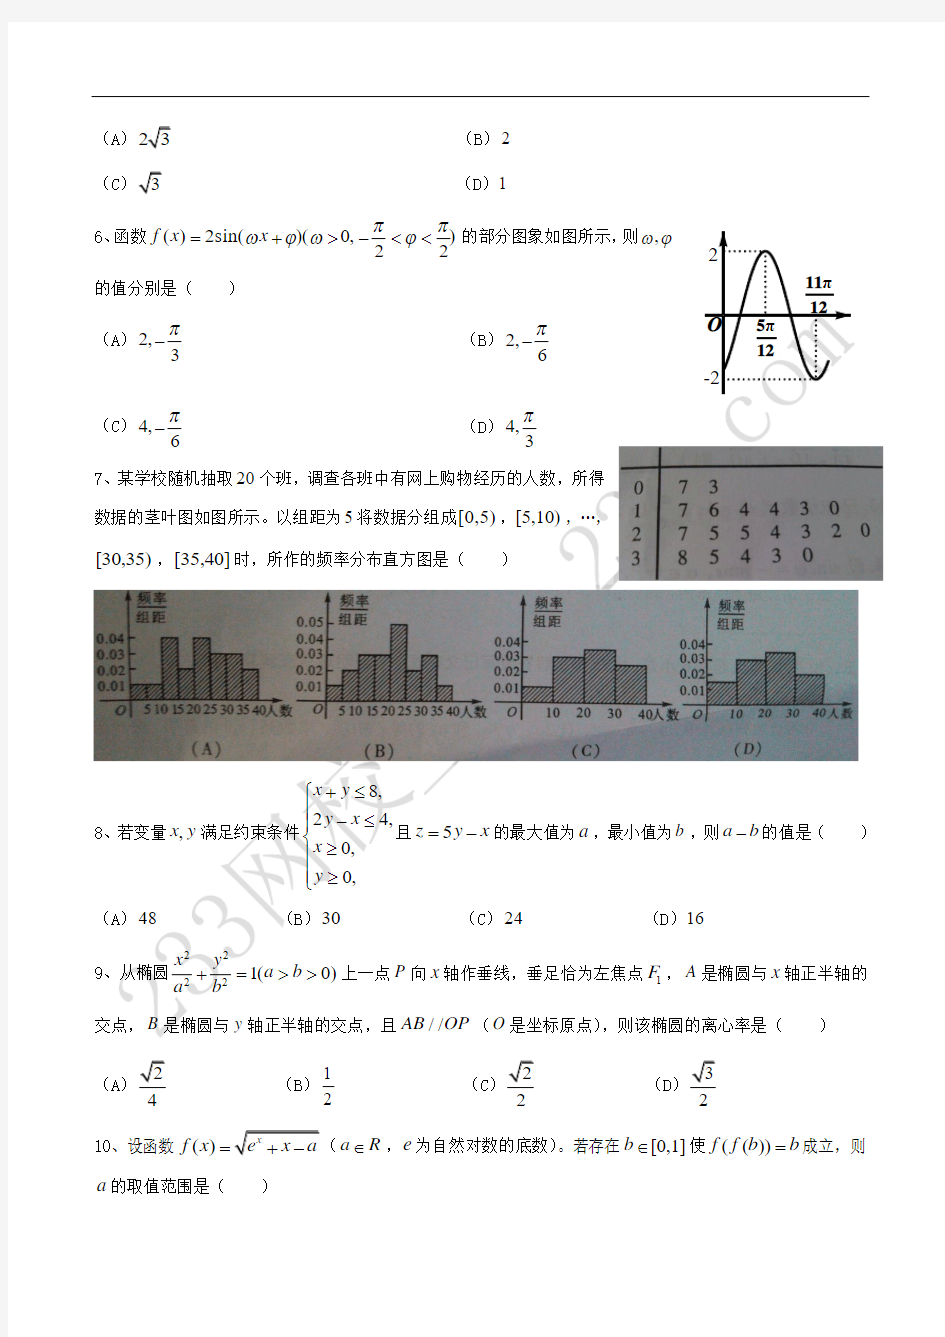 2013年高考数学(四川文)含详细解答